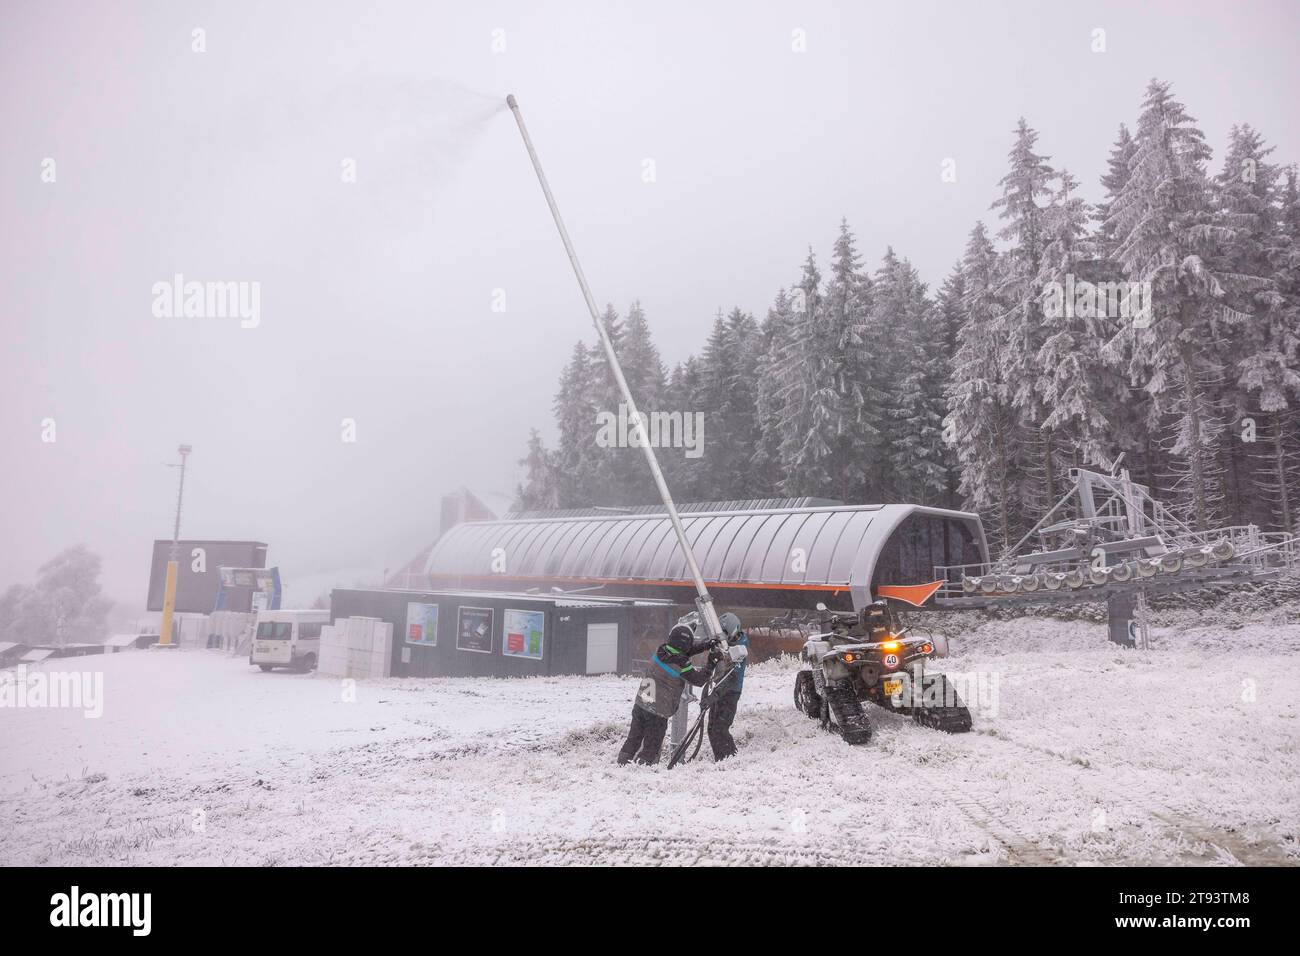 Wasser marsch am Skigebiet Keilberg laufen en el juego Dienstagabend die Schneekanonen heiß. Es principiante en el juego Vorbereitungen auf die Skisaison. IM Gegensatz zum Skigebiet en Oberwiesenthal werden die Hänge kräftig beschneit. Auf allen Pisten laufen die Schneekanonen. Das Betriebspersonal ist dabei die Schneekanonen immer wieder neu auszurichten. Dabei stehen die chancen auf einen frühen Saisonbeginn nicht schlecht. Am Wochenende kommen bis zu 30 cm Neuschnee hinzu. Keilberg Bayern Deutschland Crédito: Imago/Alamy Live News Foto de stock